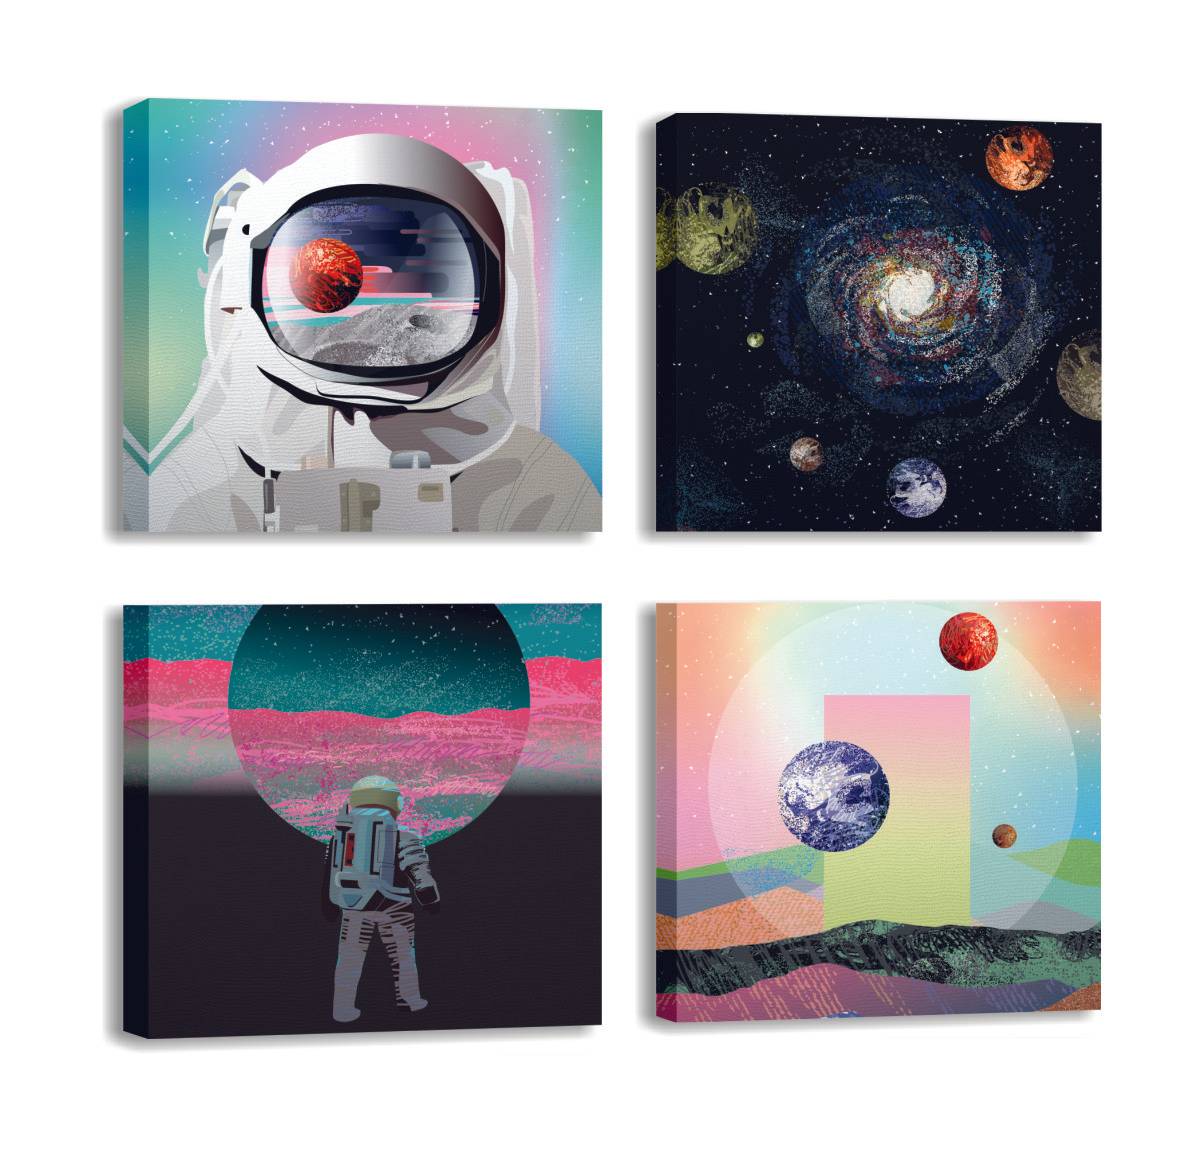 Assortiment van 4 Pictura astronaut ruimte schilderijen 30 x 30 cm Canvas Polycotton Hout Multicolour